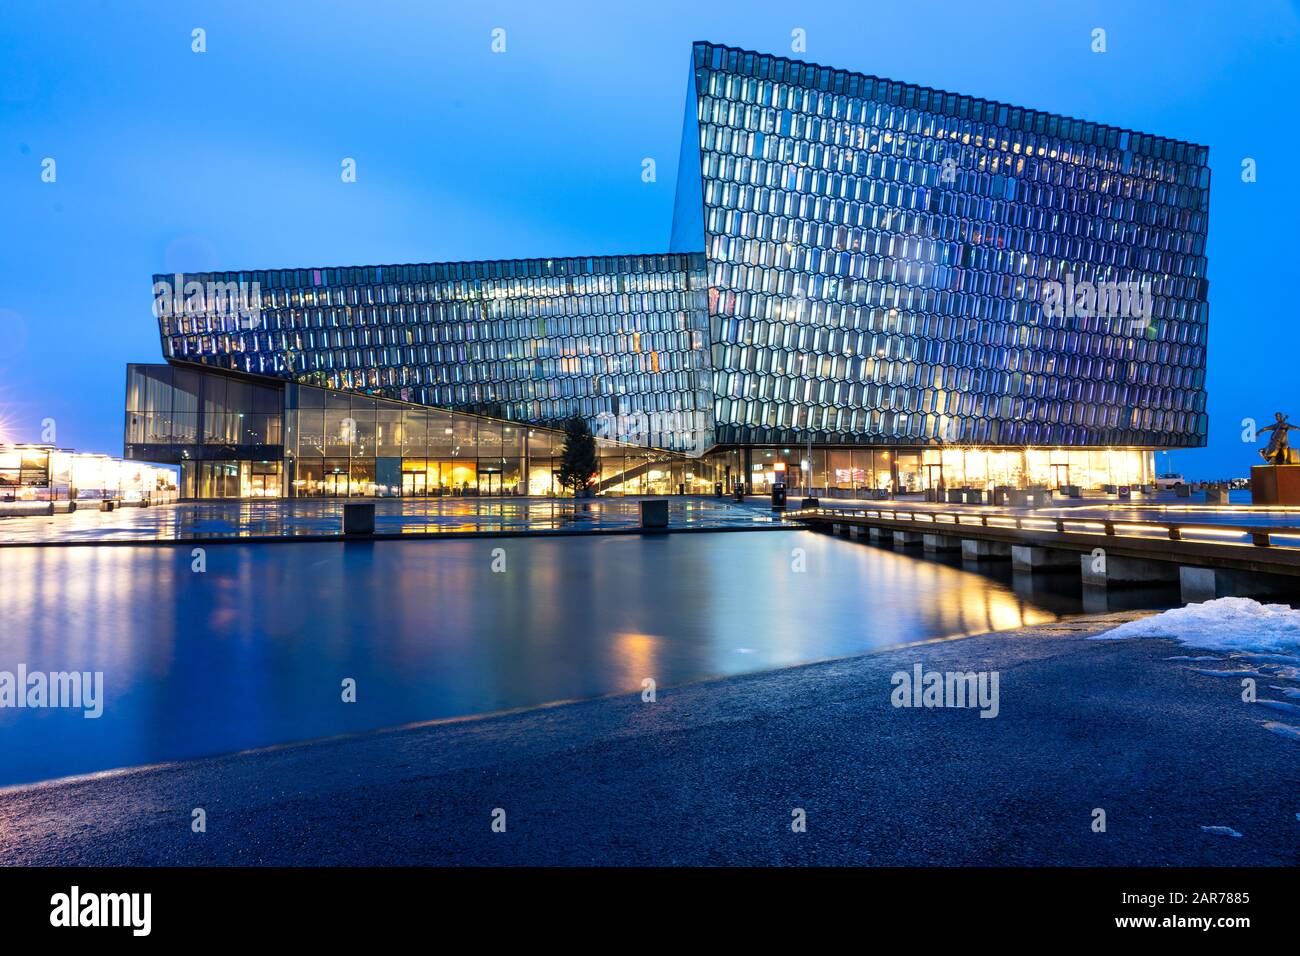 Salle de concert Harpa immeuble futuriste en verre à Reykjavik, Islande Banque D'Images